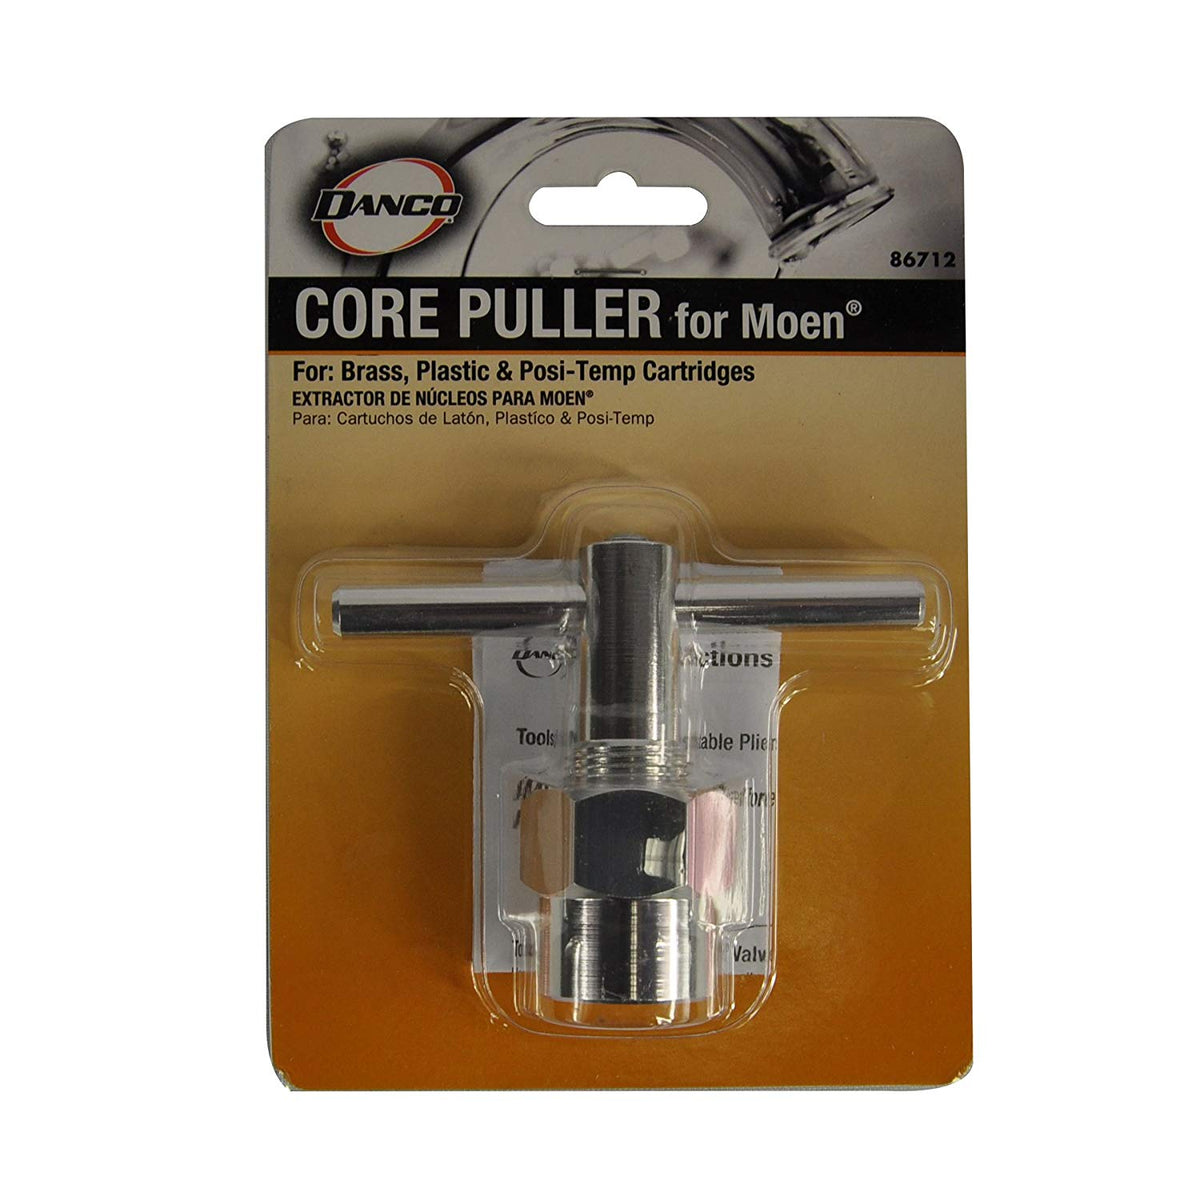 Danco 86712 Cartridge Puller for Moen, Steel